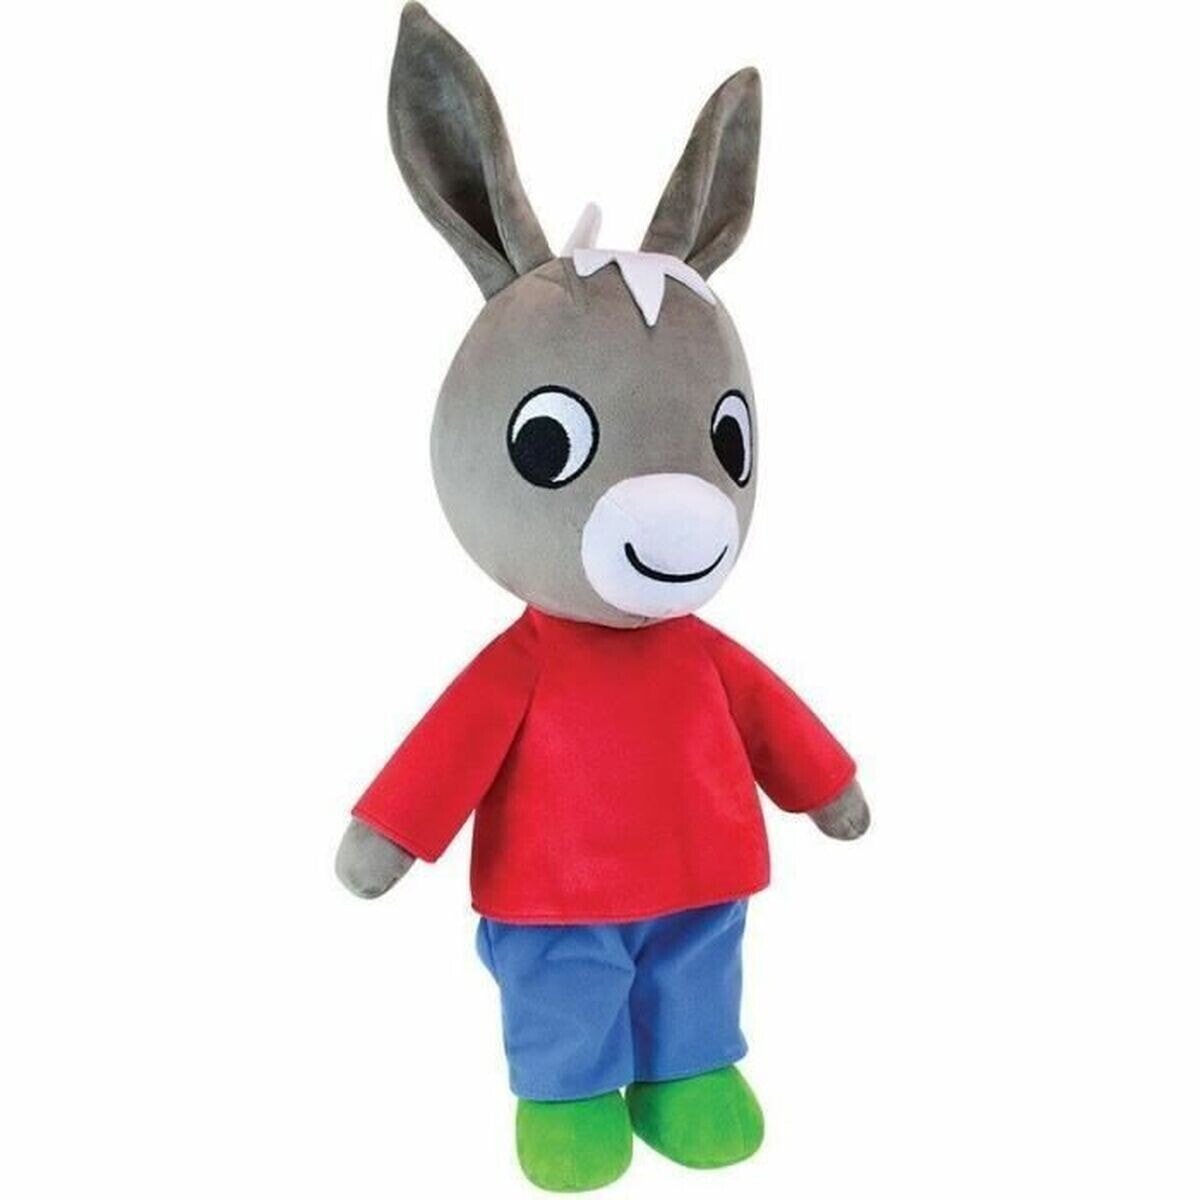 Fluffy toy Jemini Trotro Donkey